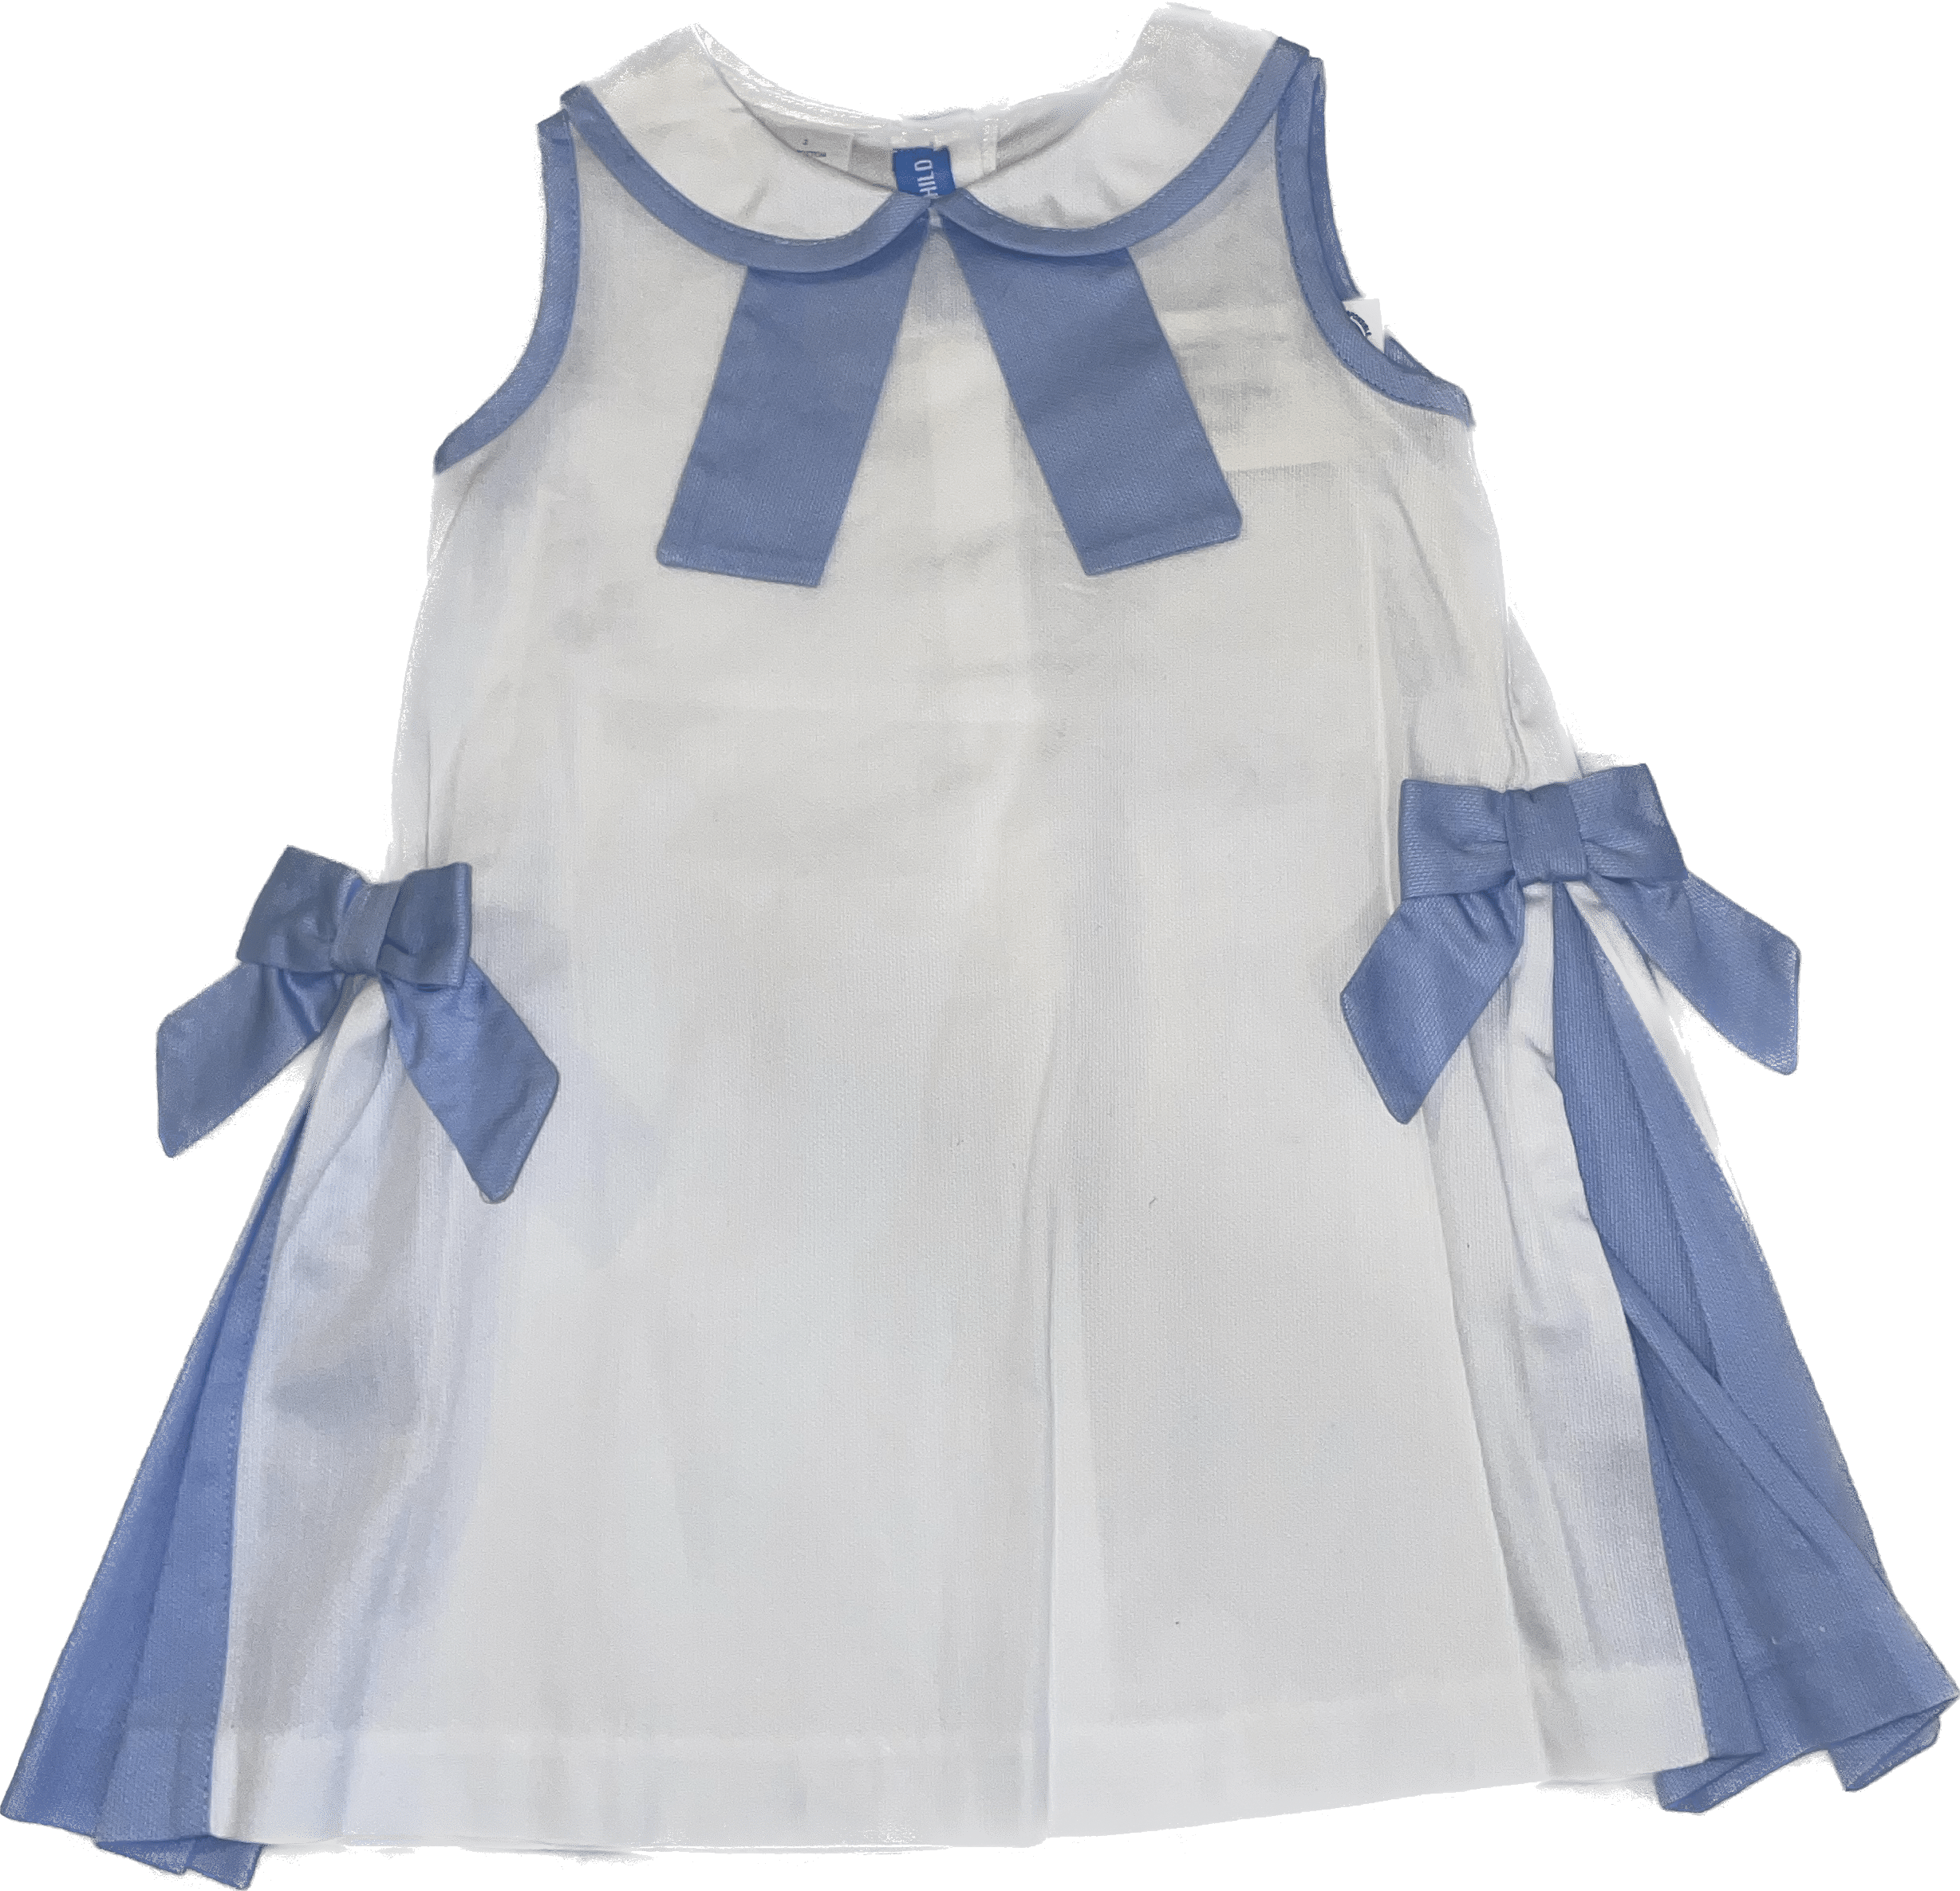 Vive La Fete Vive La Fete Sailor White Pique Dress - Little Miss Muffin Children & Home